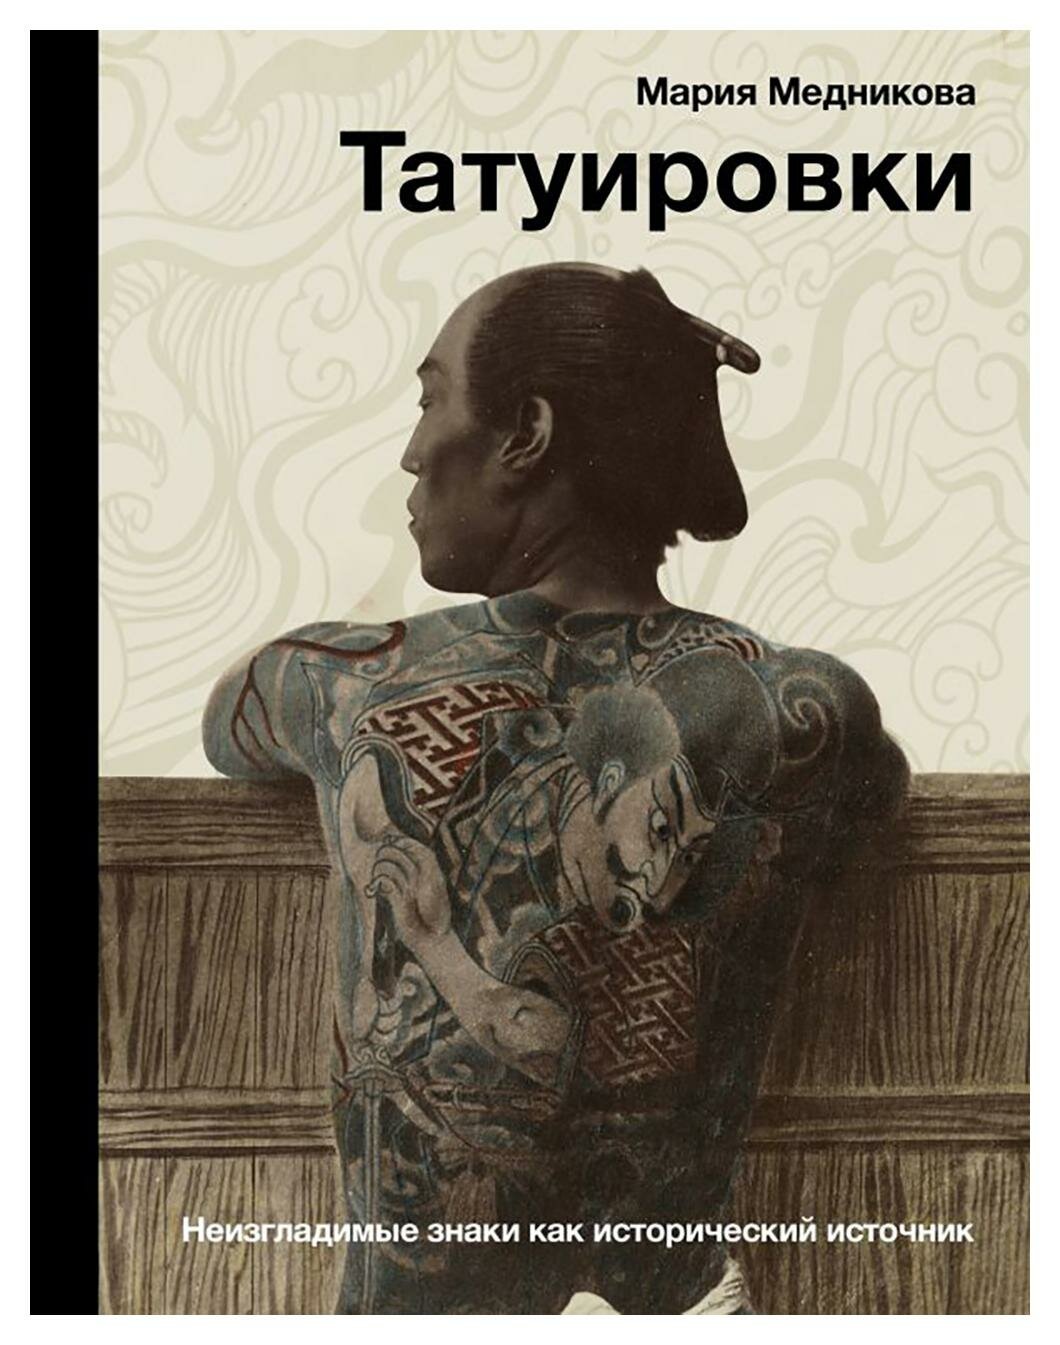 Татуировки: неизгладимые знаки как исторический источник. Медникова М. Б. АСТ